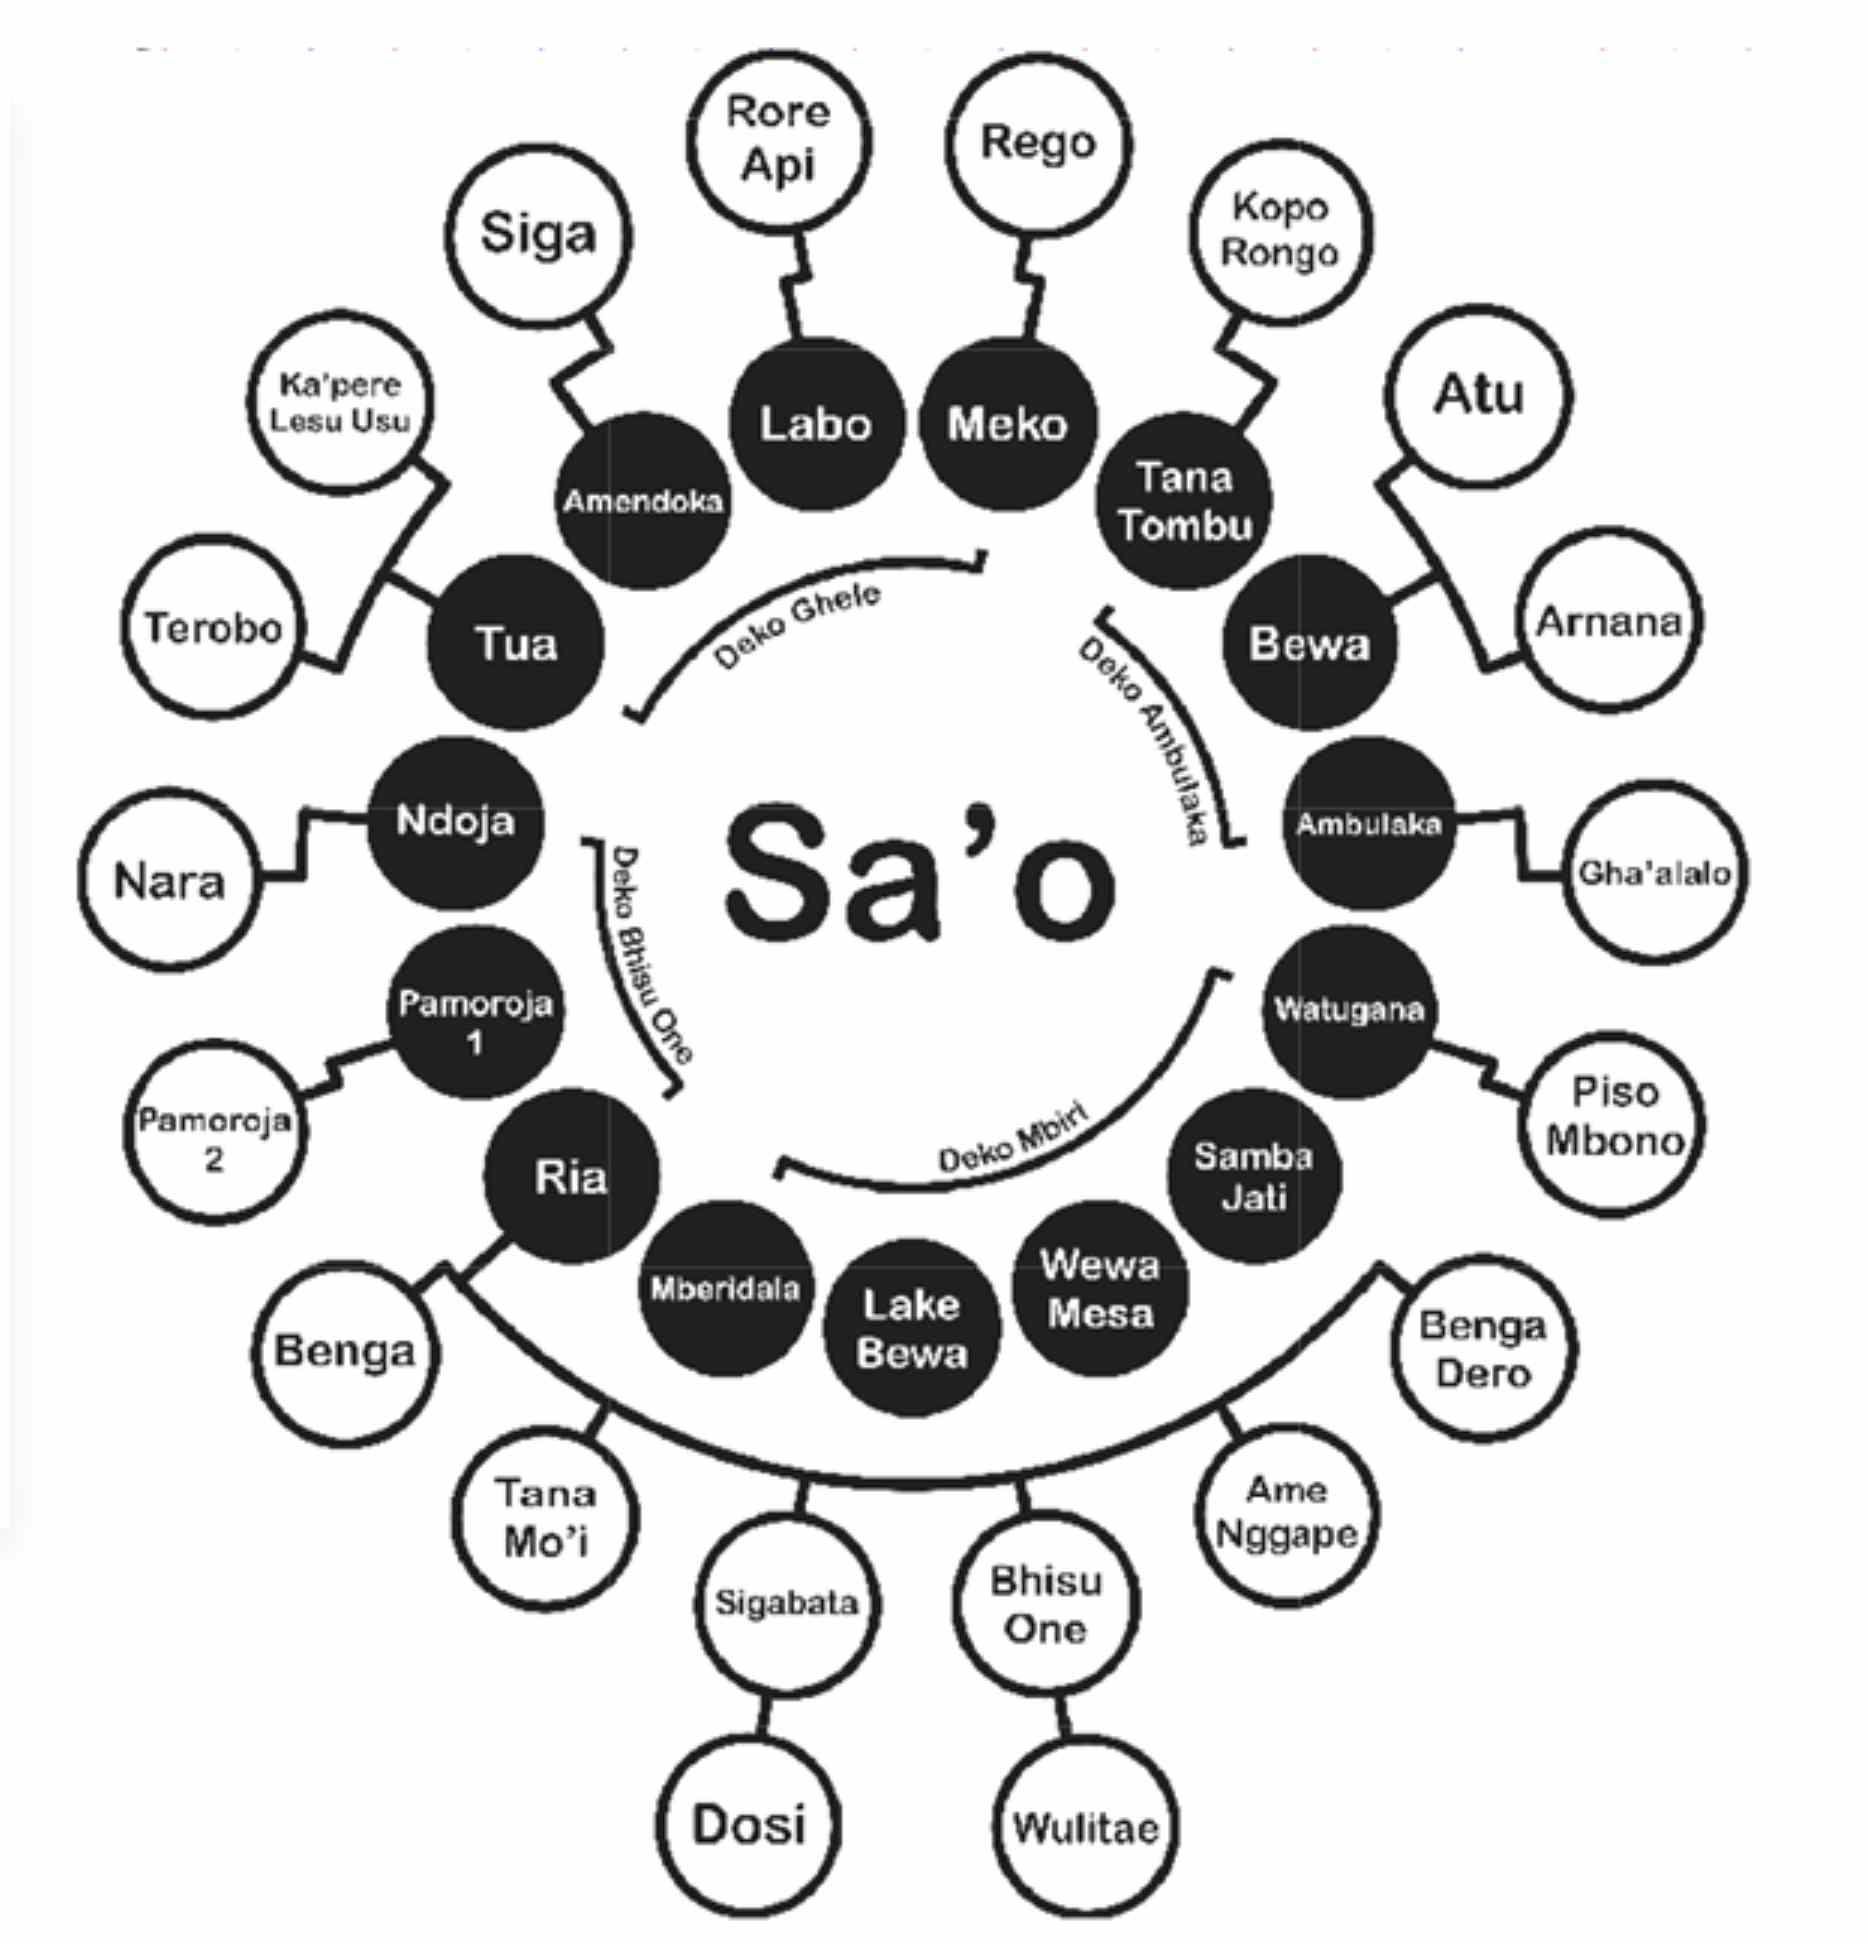 Description: The relationship between sa'o and poa paso